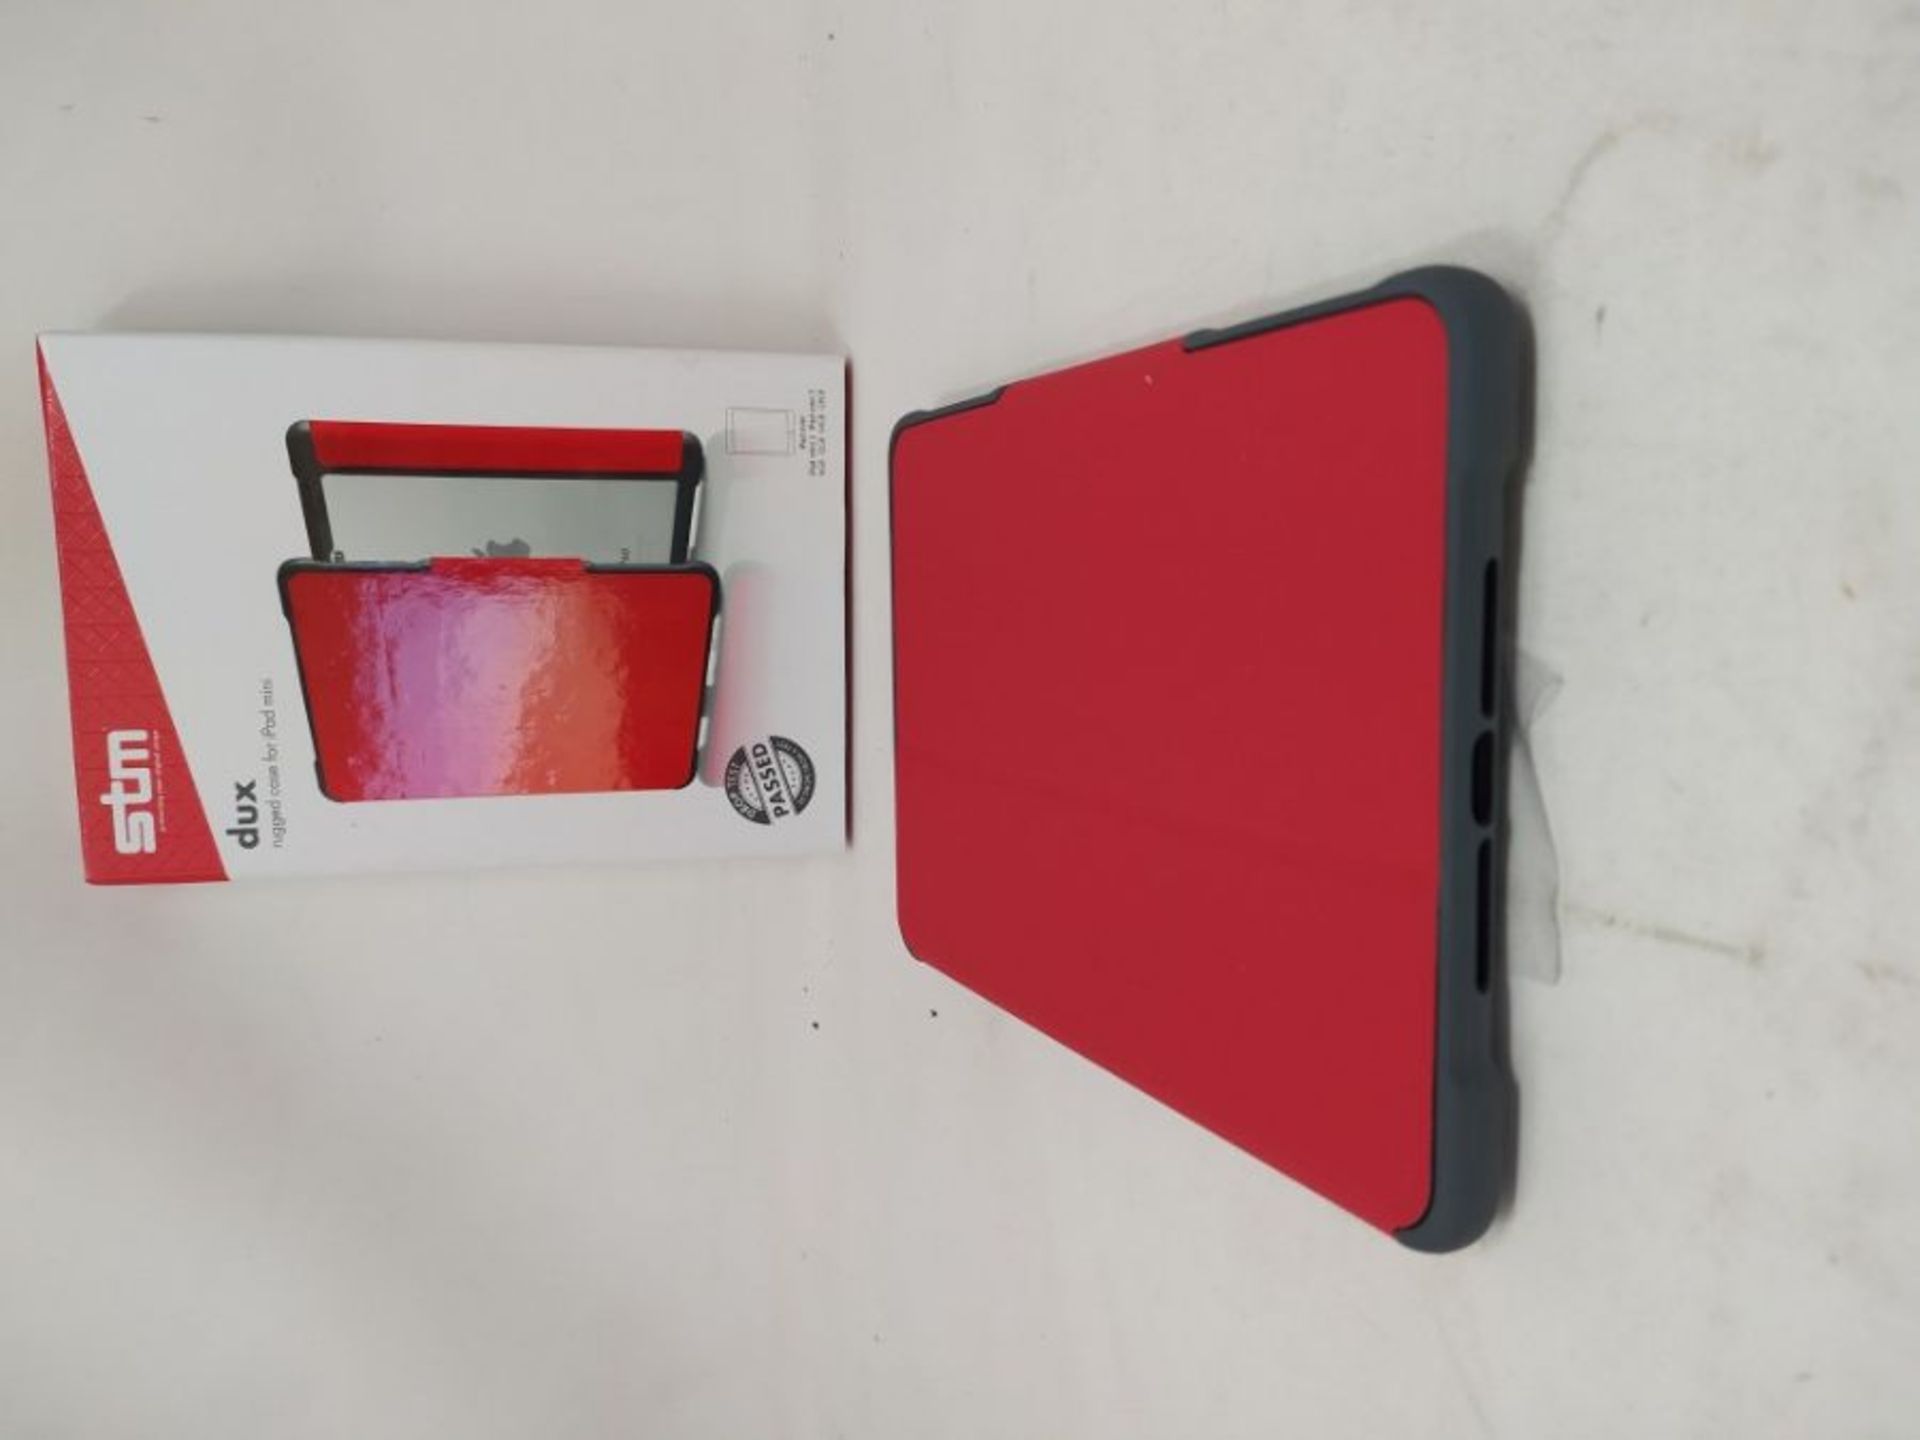 STM dux Case for iPad Mini/Mini 2/Mini 3 - Red - Image 3 of 3